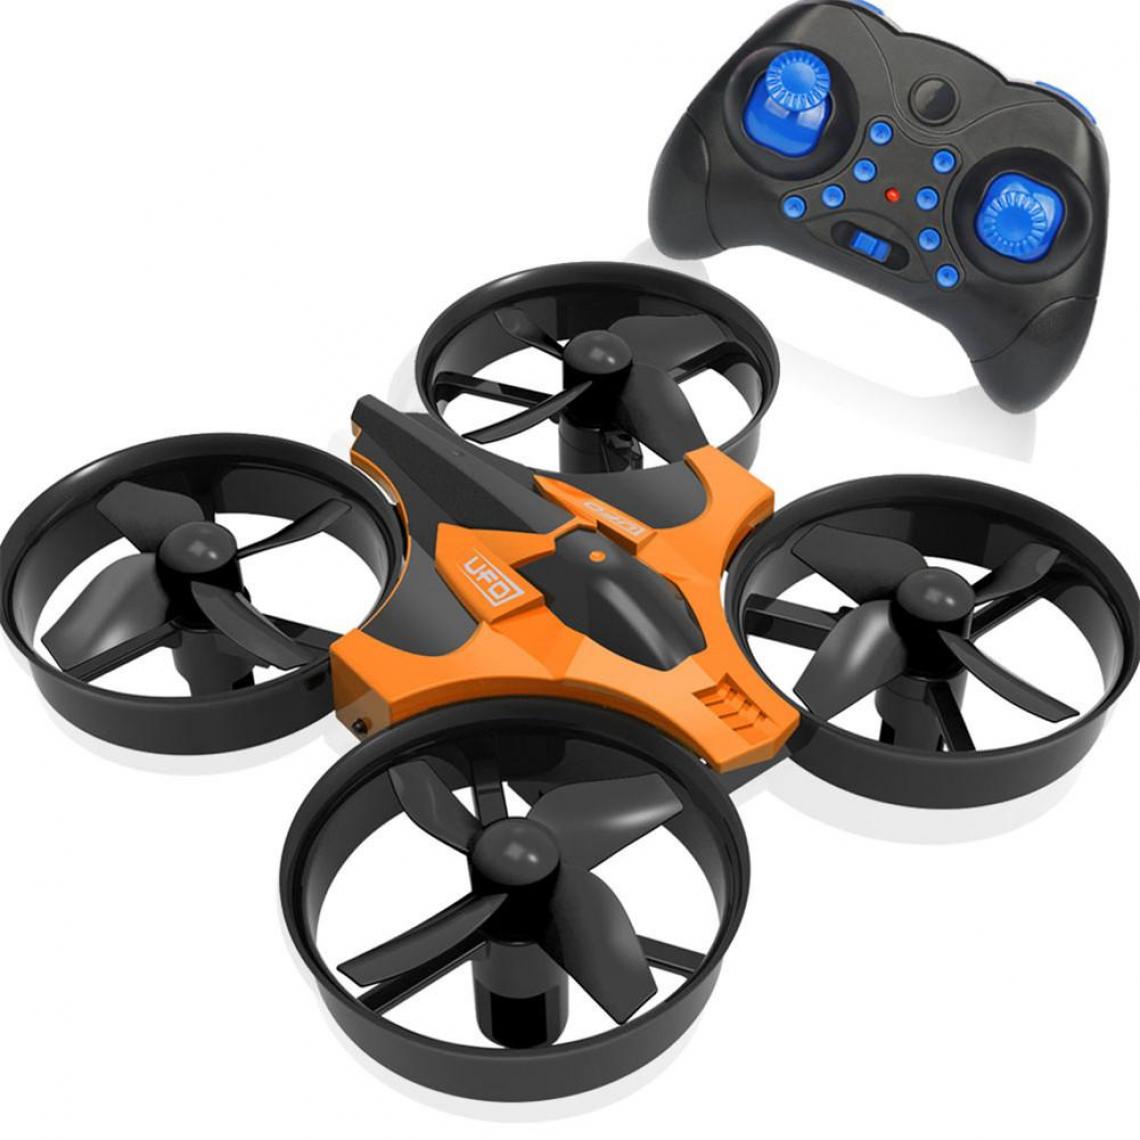 Universal - Mini drone 2.4G 4 canaux 6 axes vitesse 3D flip mode sans fil RC jouets sans mains cadeaux RTF avec télécommande E010 H8 H36 H36F | RC Helicopter(Le noir) - Drone